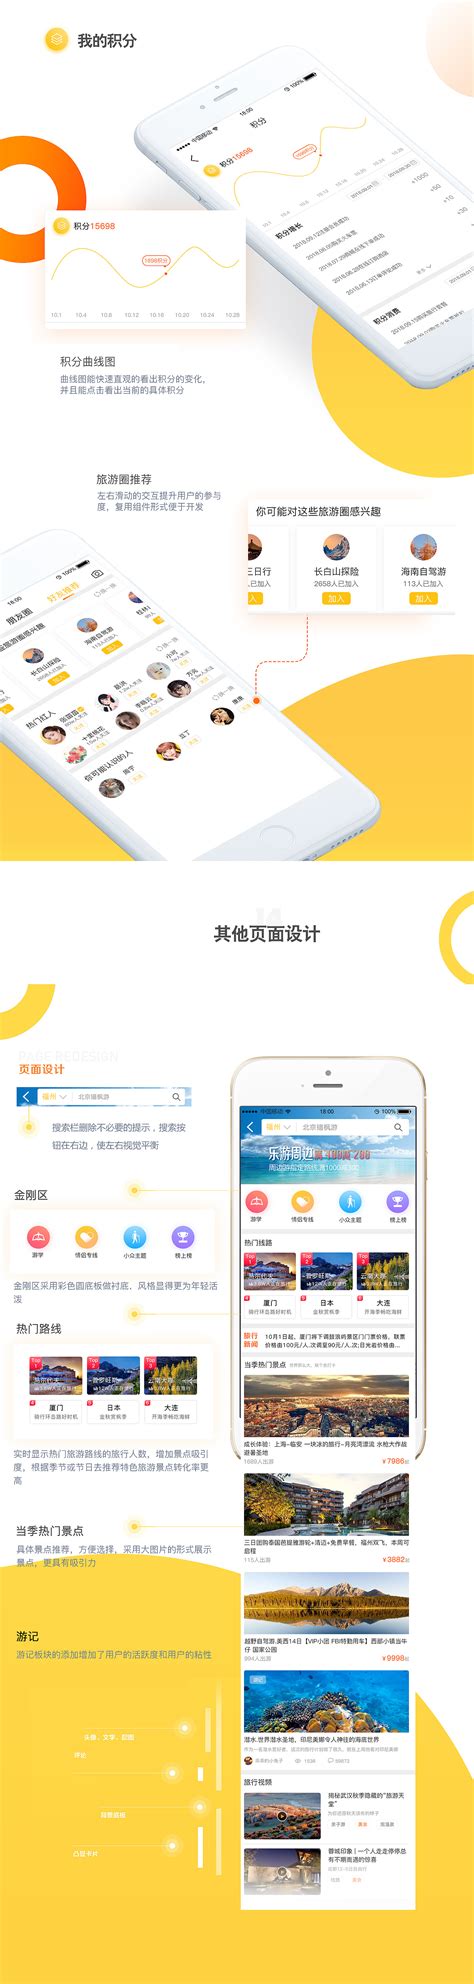 上海网络公司做一个好网站必须要做到什么 - 网站建设 - 开拓蜂